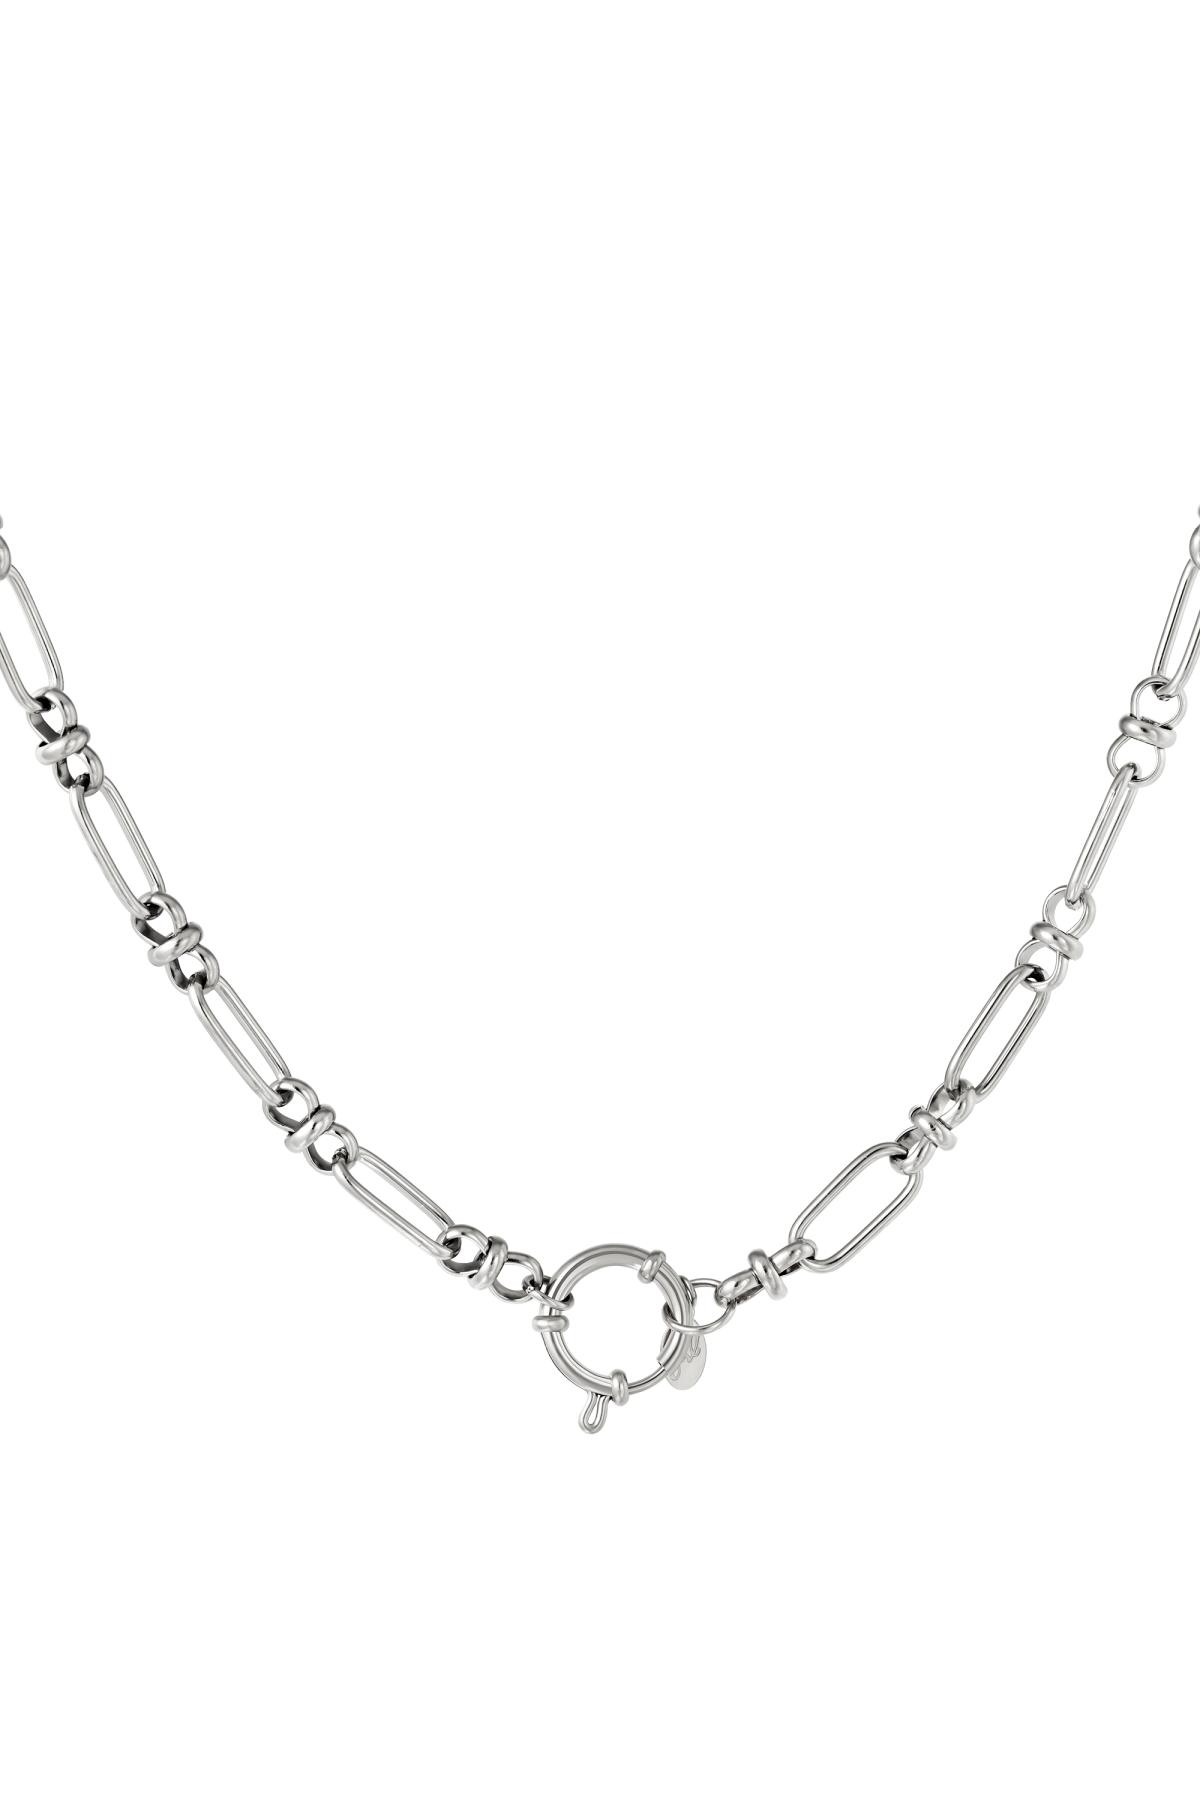 Halskette mit rundem Verschluss Silber Edelstahl